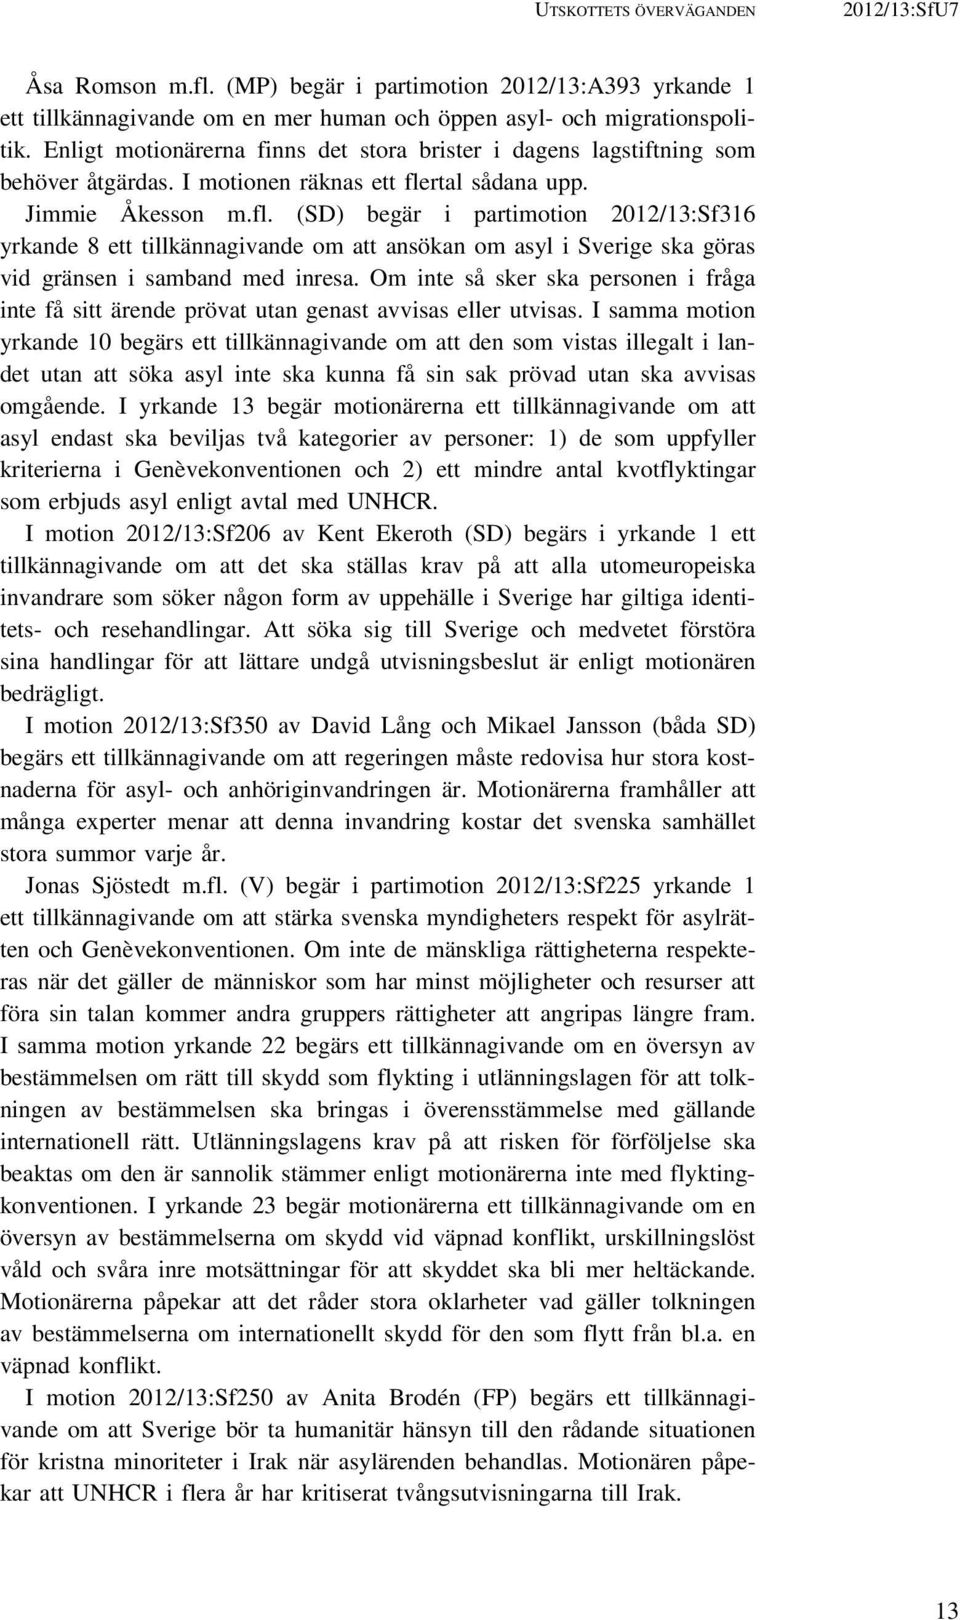 rtal sådana upp. Jimmie Åkesson m.fl. (SD) begär i partimotion 2012/13:Sf316 yrkande 8 ett tillkännagivande om att ansökan om asyl i Sverige ska göras vid gränsen i samband med inresa.